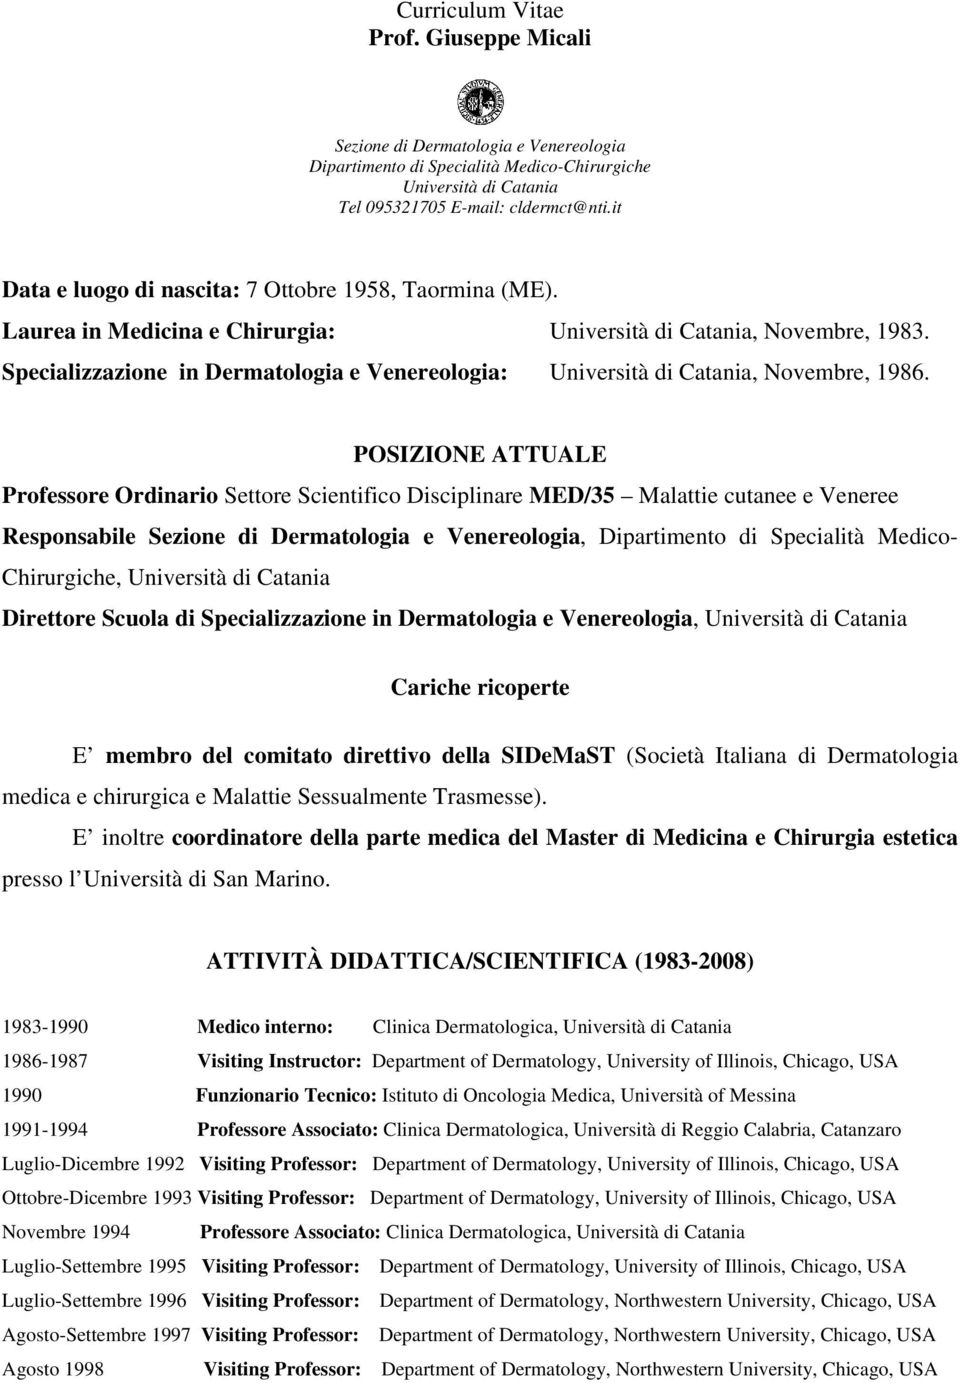 Specializzazione in Dermatologia e Venereologia: Università di Catania, Novembre, 1986.